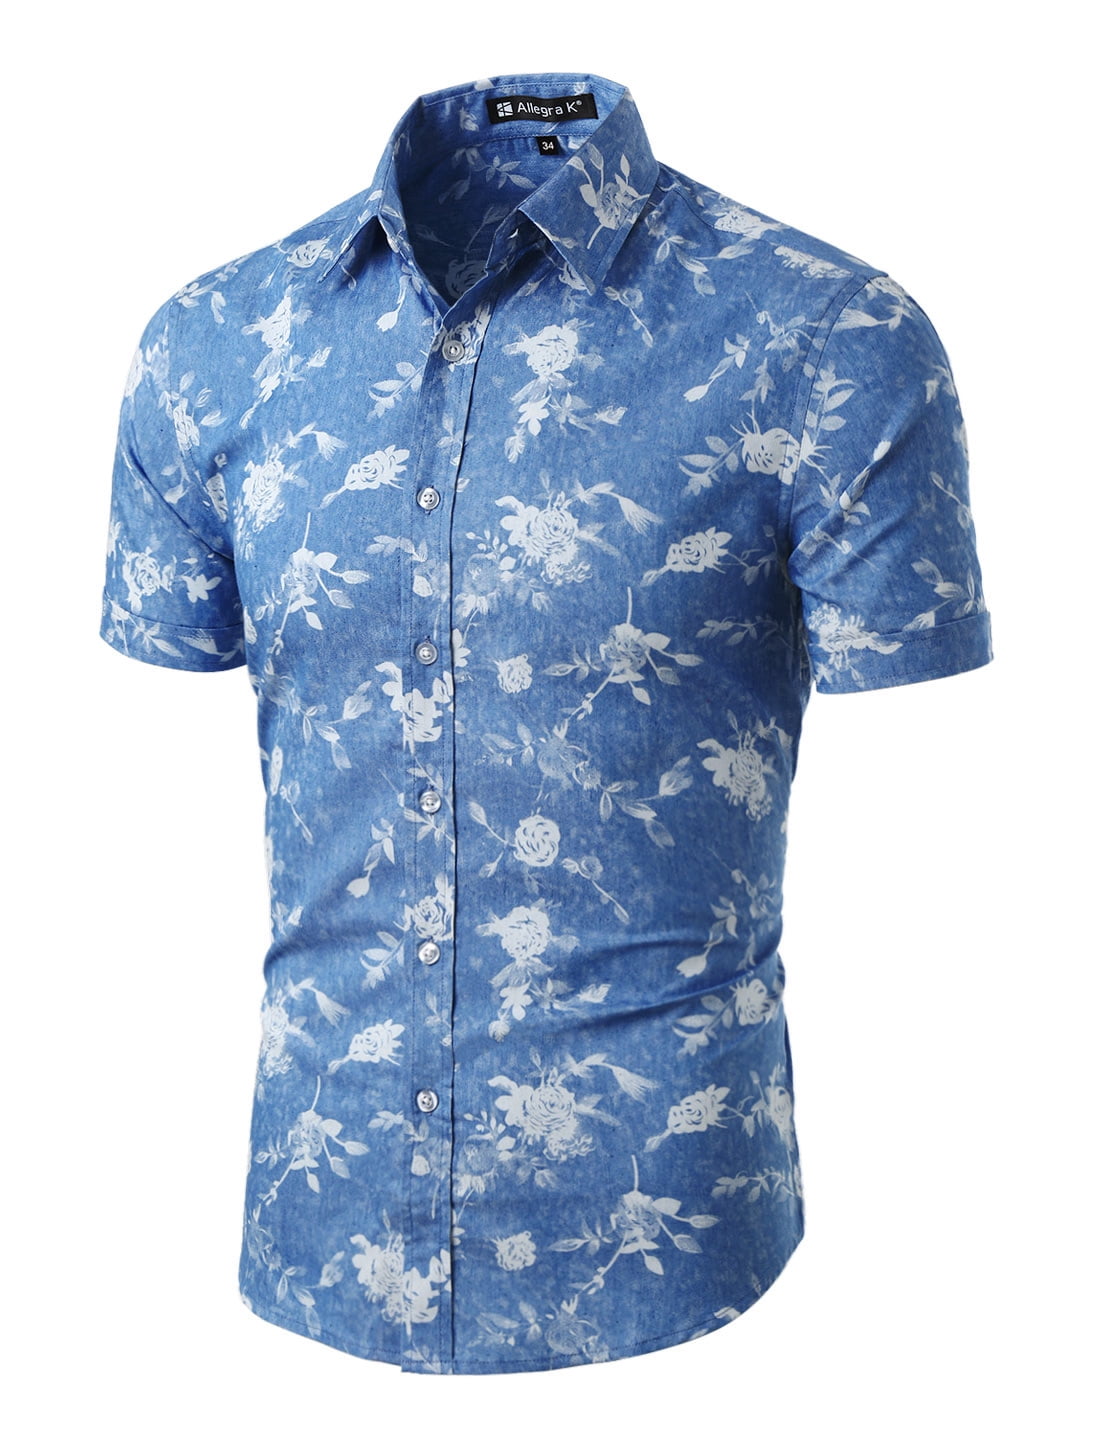 Men Short Sleeve Button Down Floral Print Cotton Shirt Blue White S (US ...